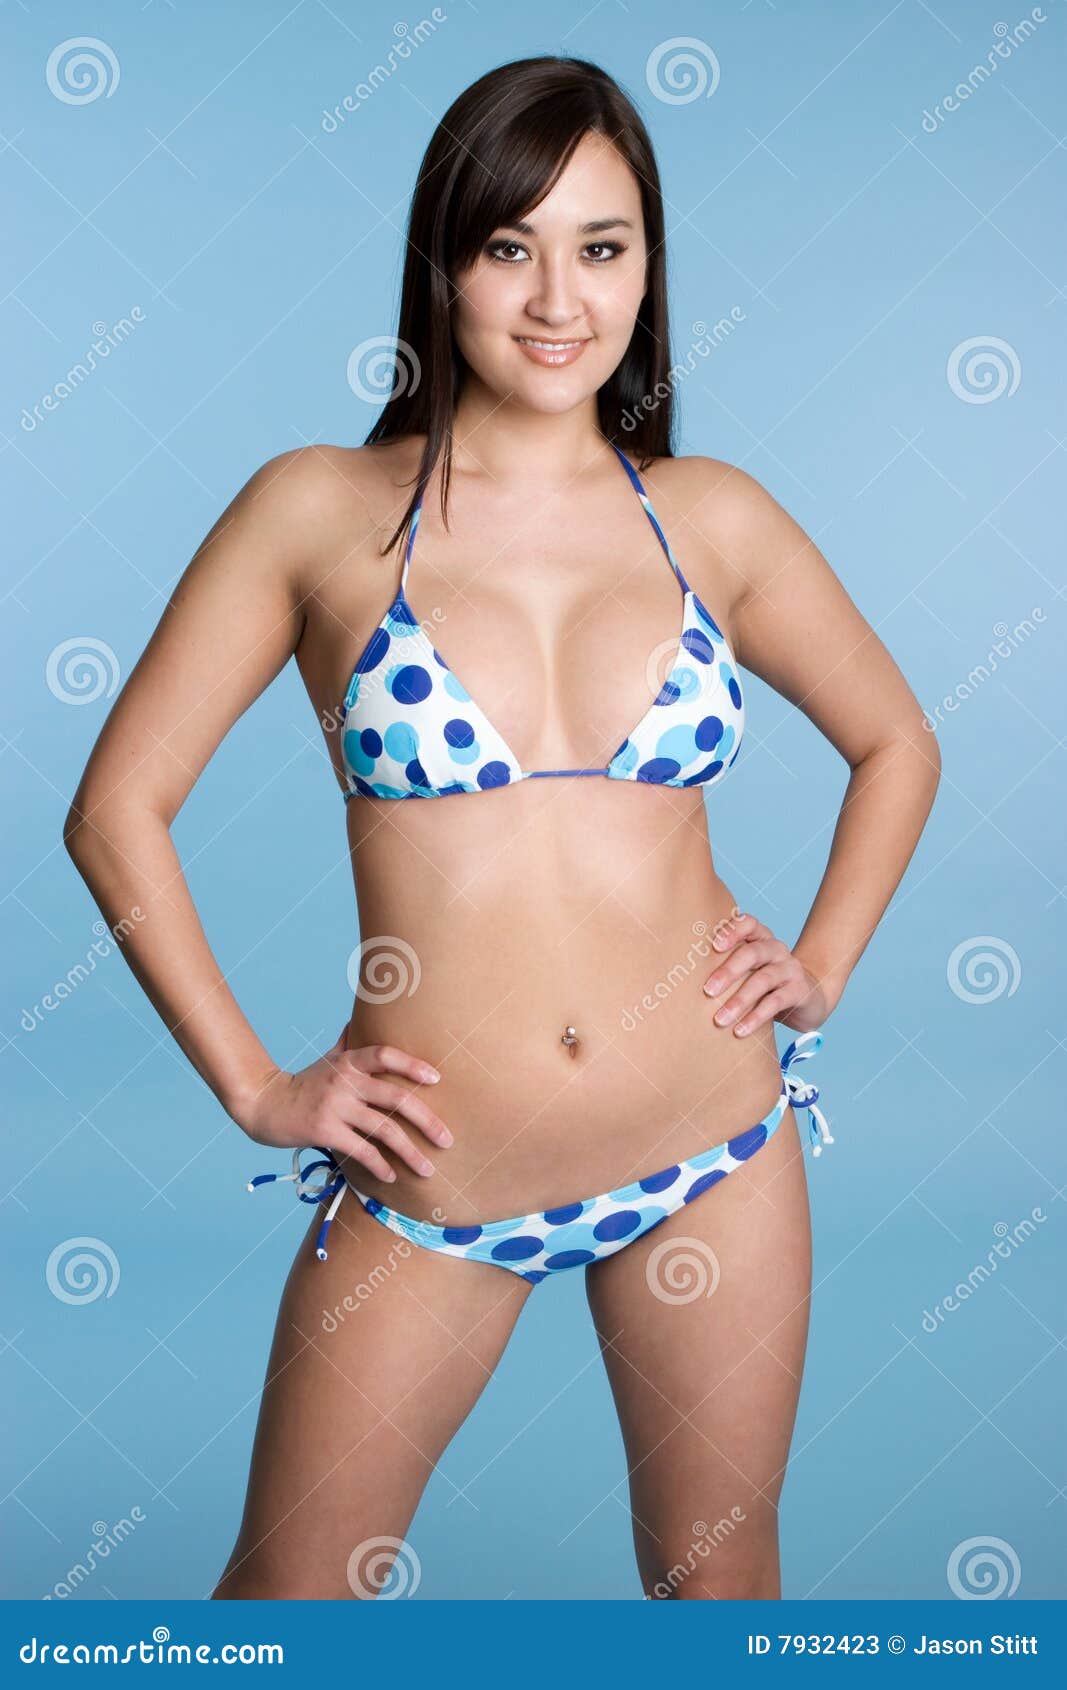 bikini girl japanese photo